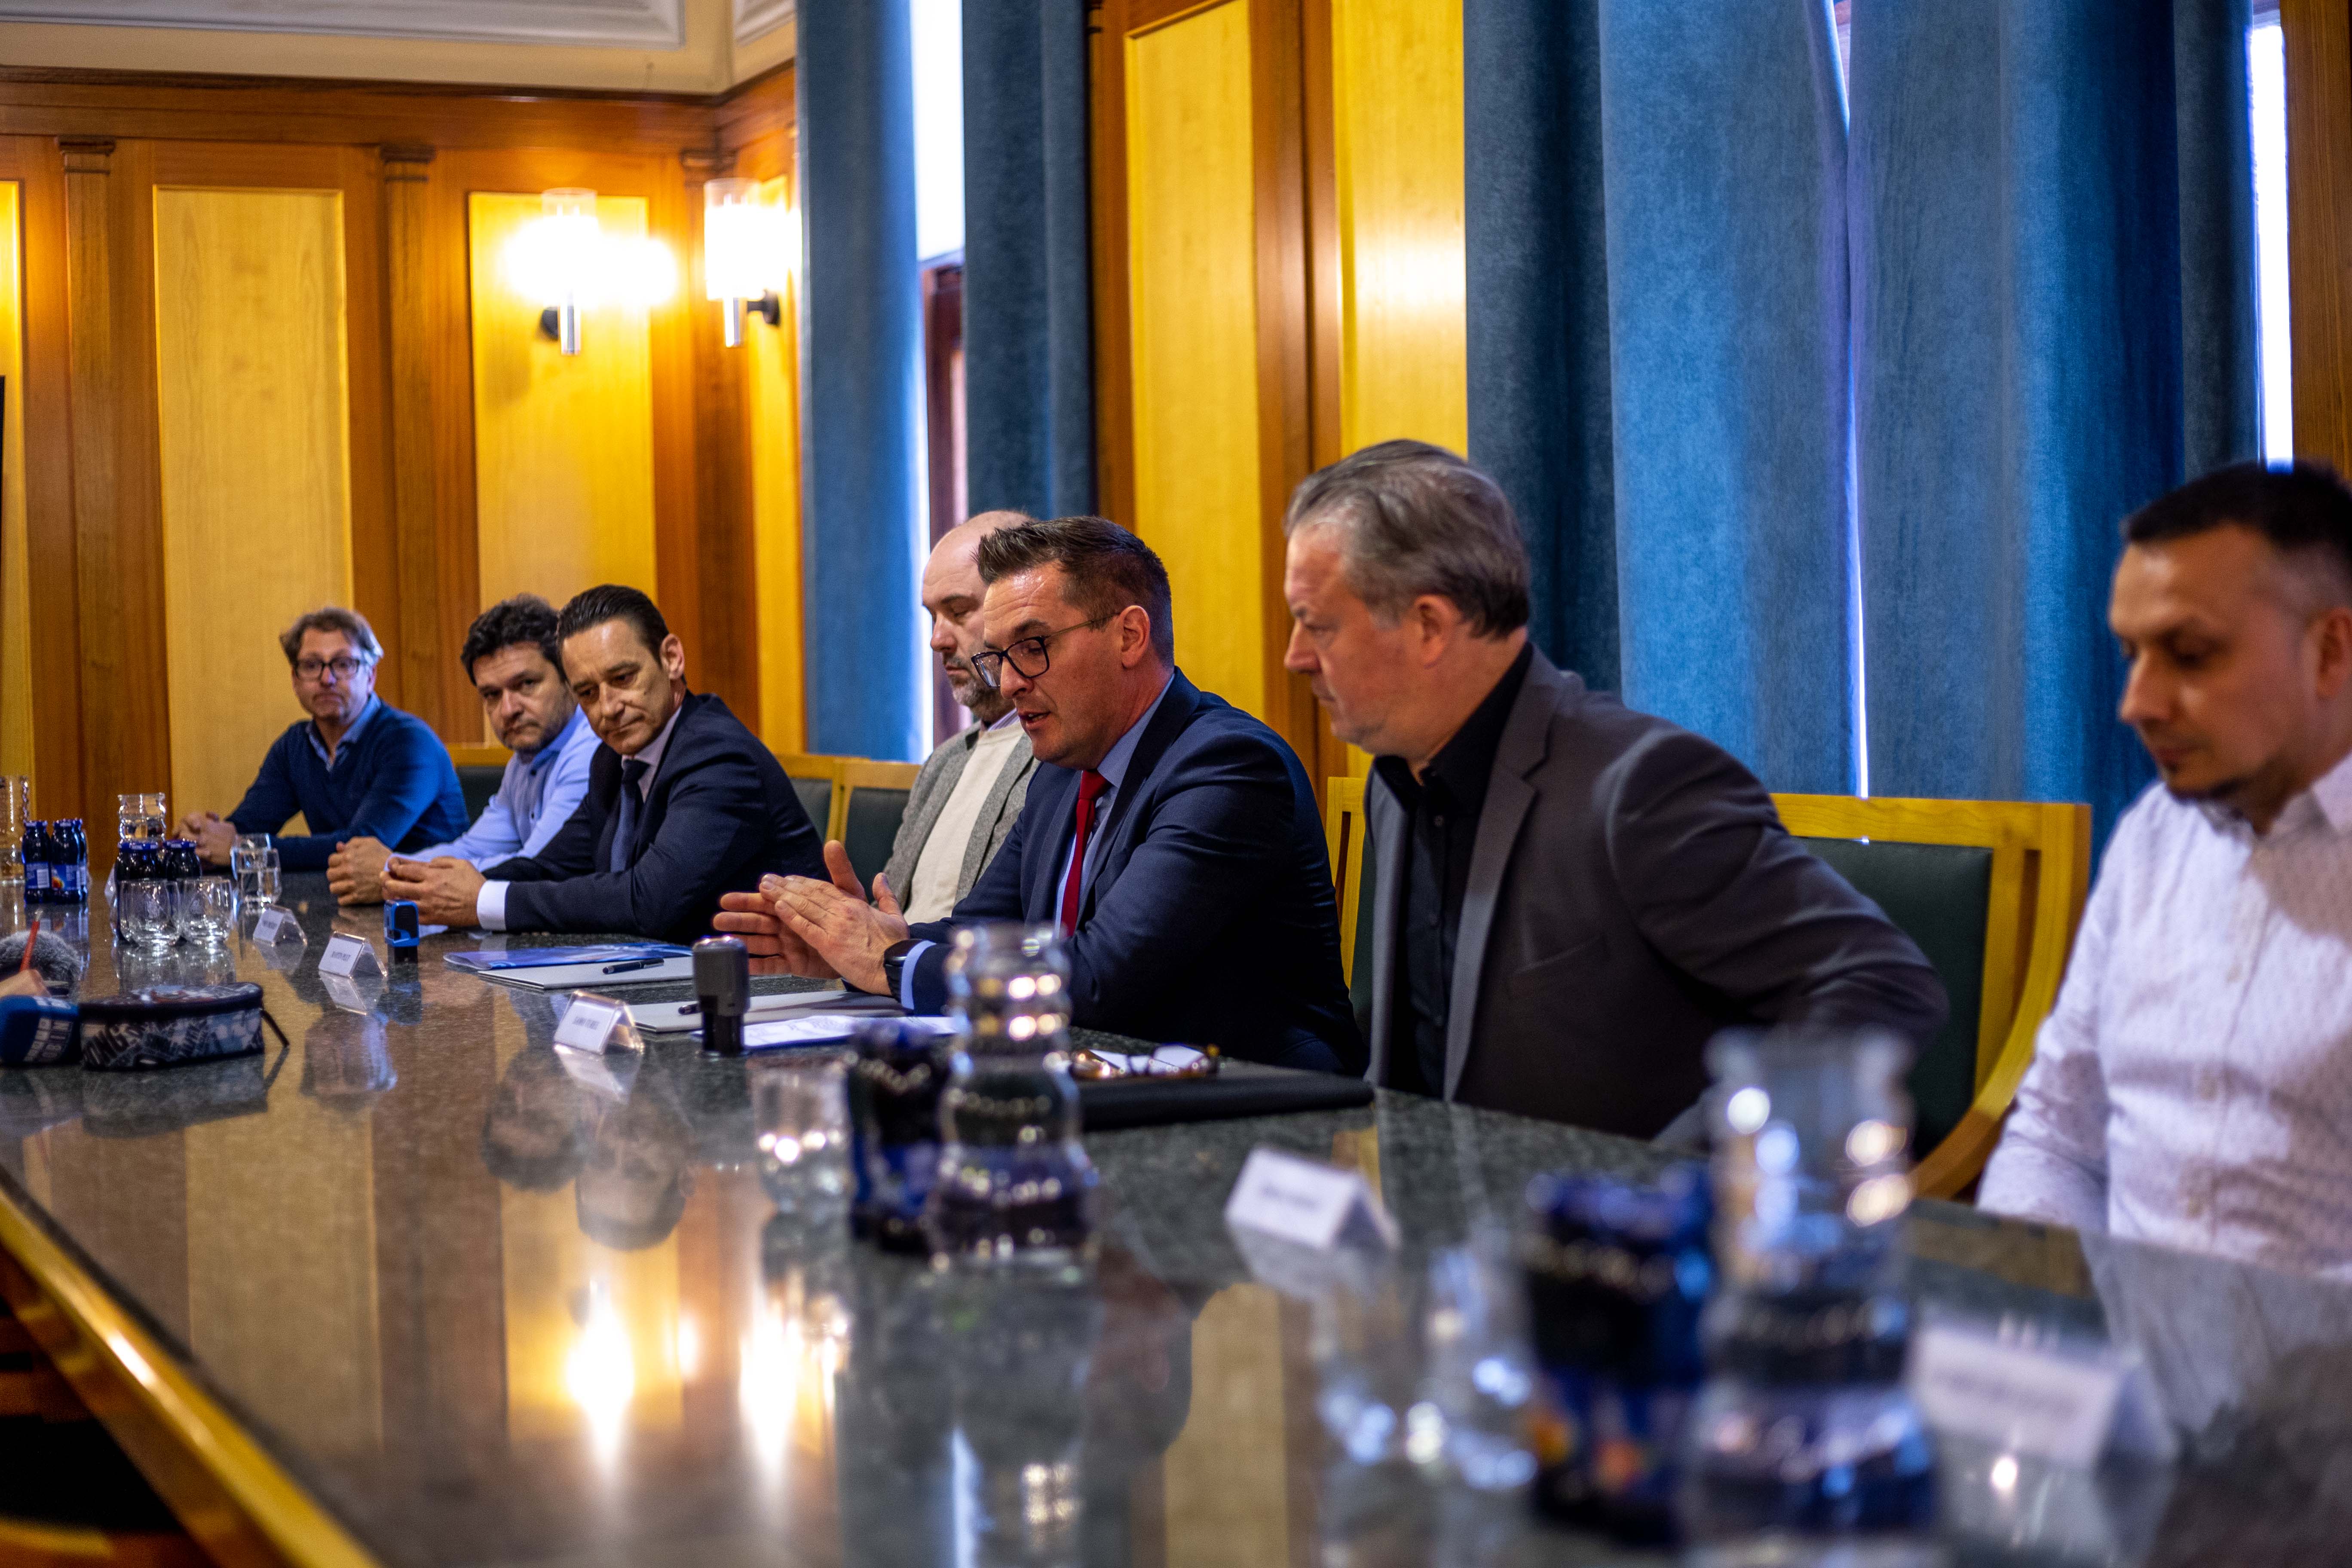 Predstavniki mestne občine in podjetja Hidrotehnika sedijo za mizo v zeleni dvorani mestne občine